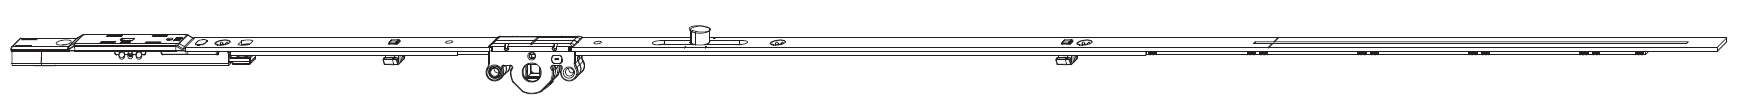 MAICO -  Cremonese MULTI-MATIC anta a bandiera altezza maniglia fissa con puntale chiusura ad espansione per seconda anta - gr / dim. 1590 - entrata 15 - alt. man. 500 - lbb/hbb 1341 - 1590